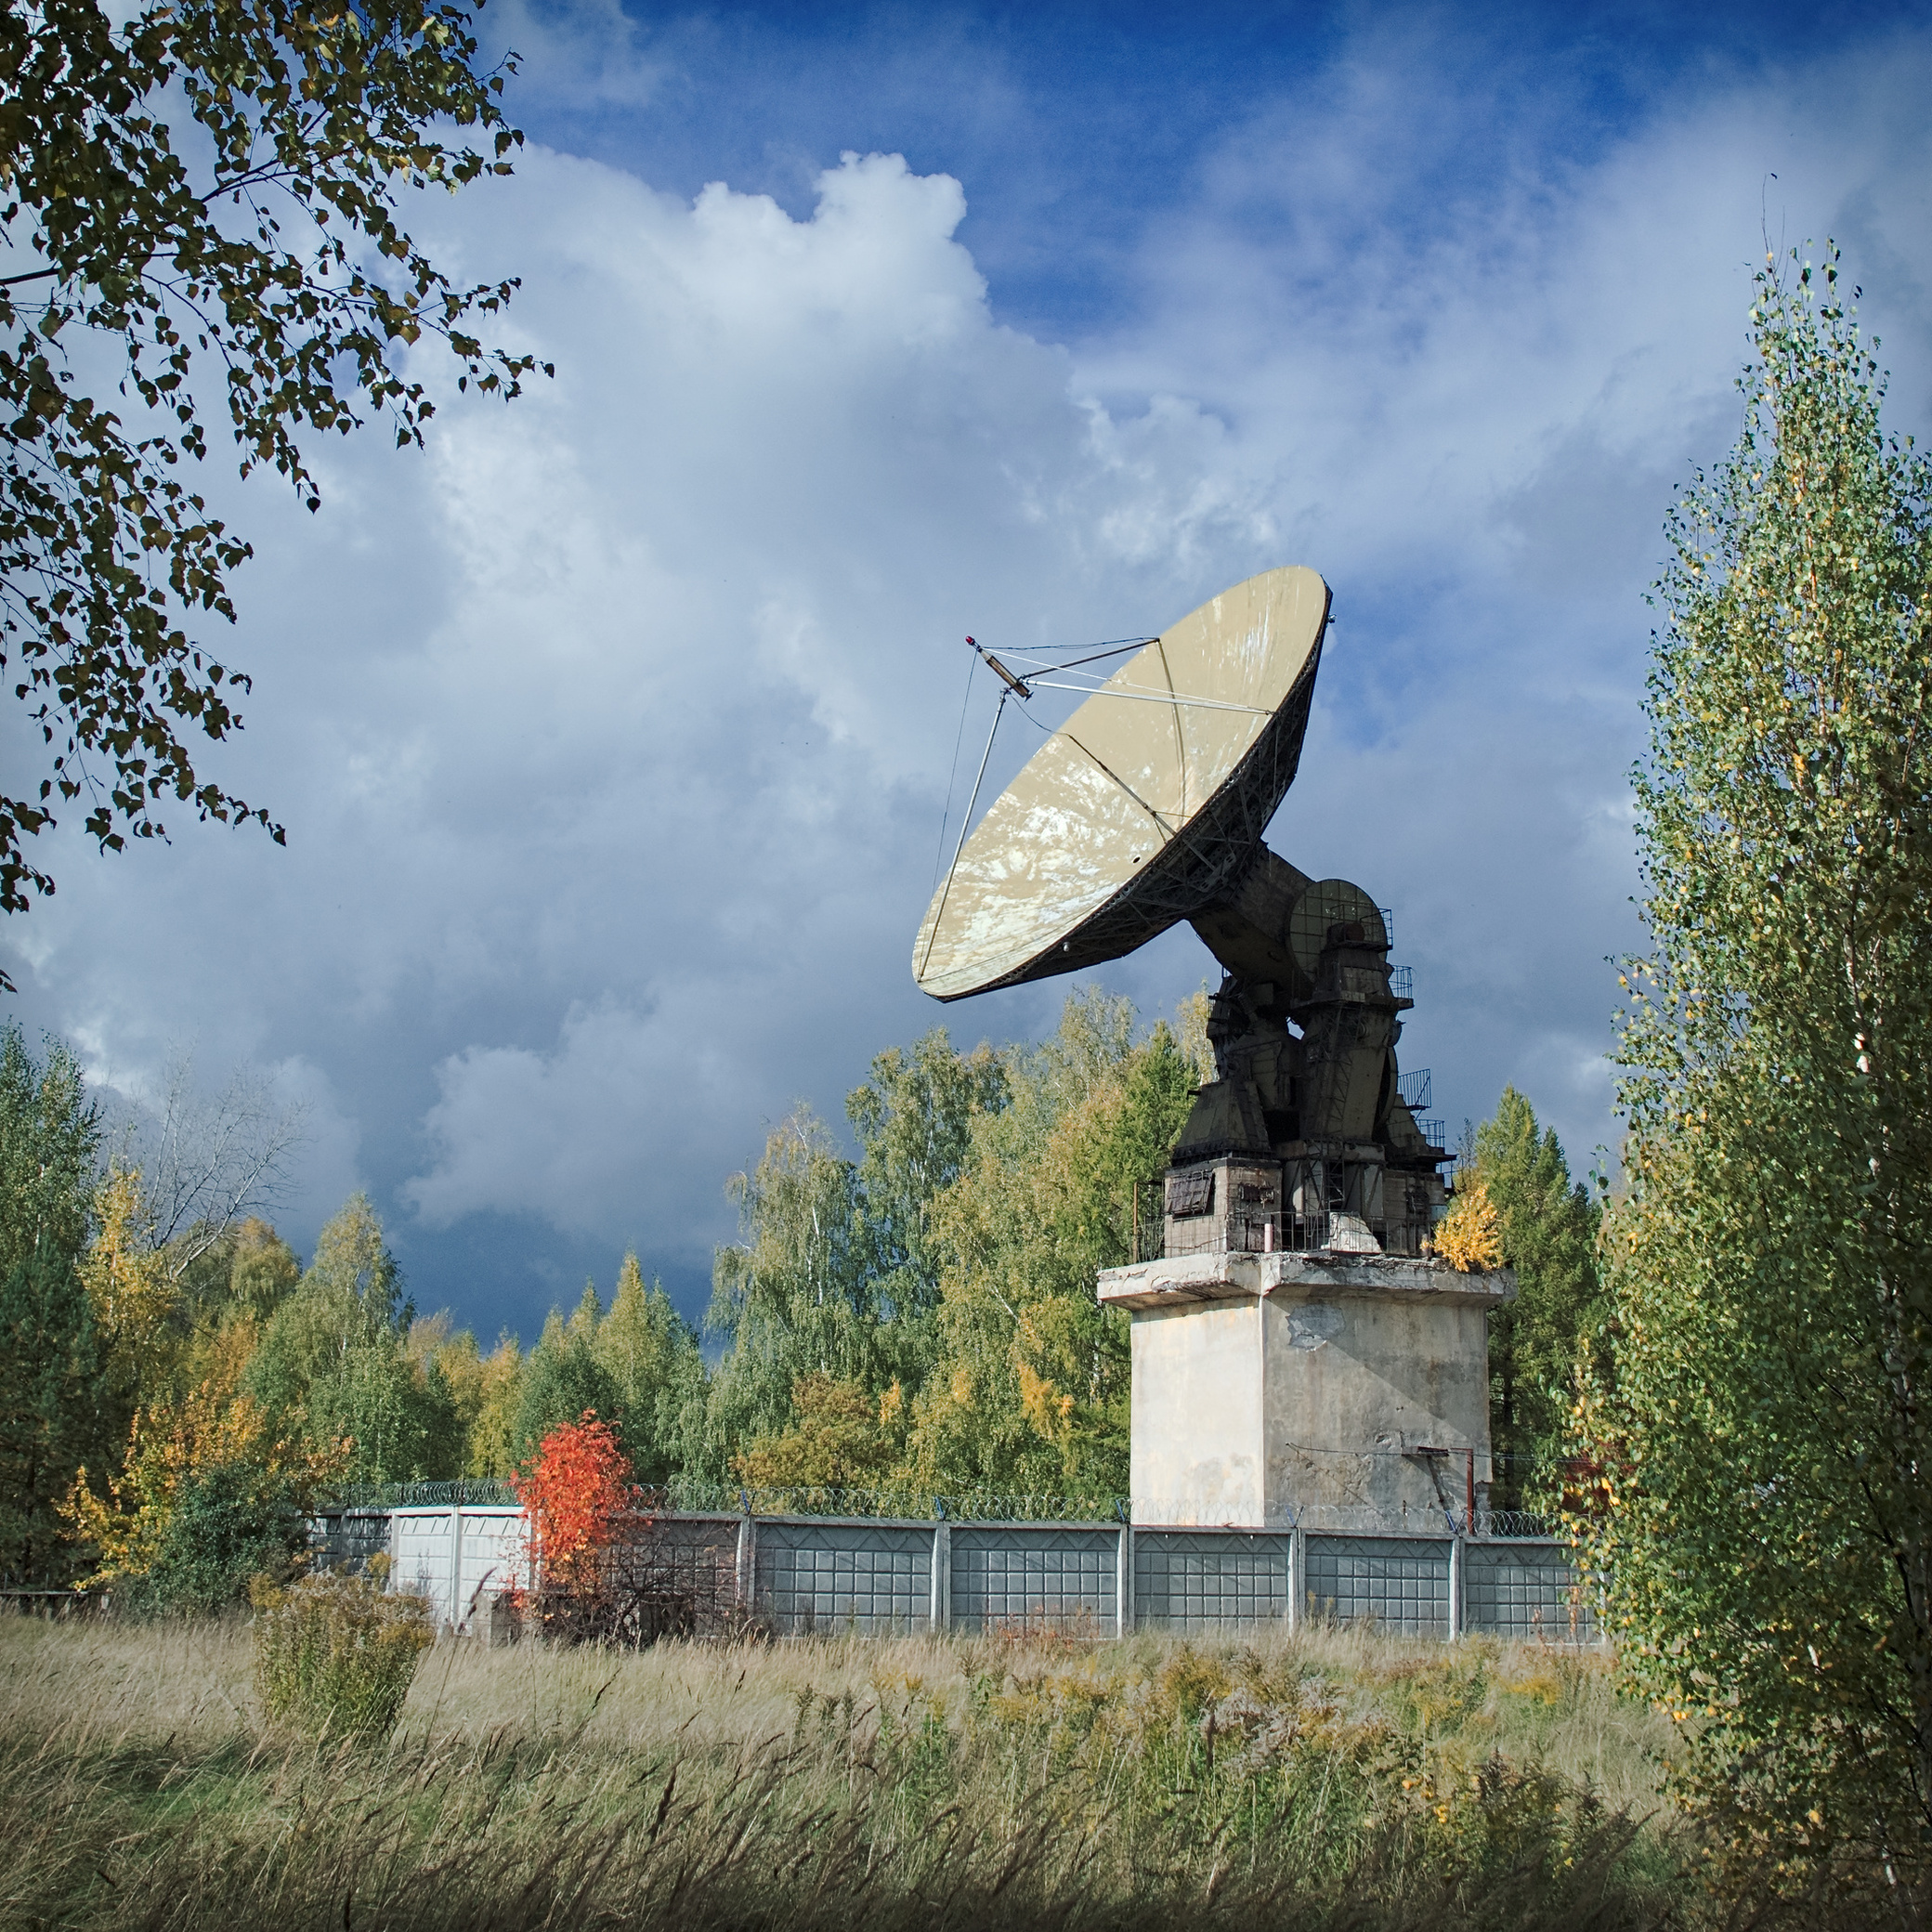 Последний телескоп радиоастрономической станции "Зименки"